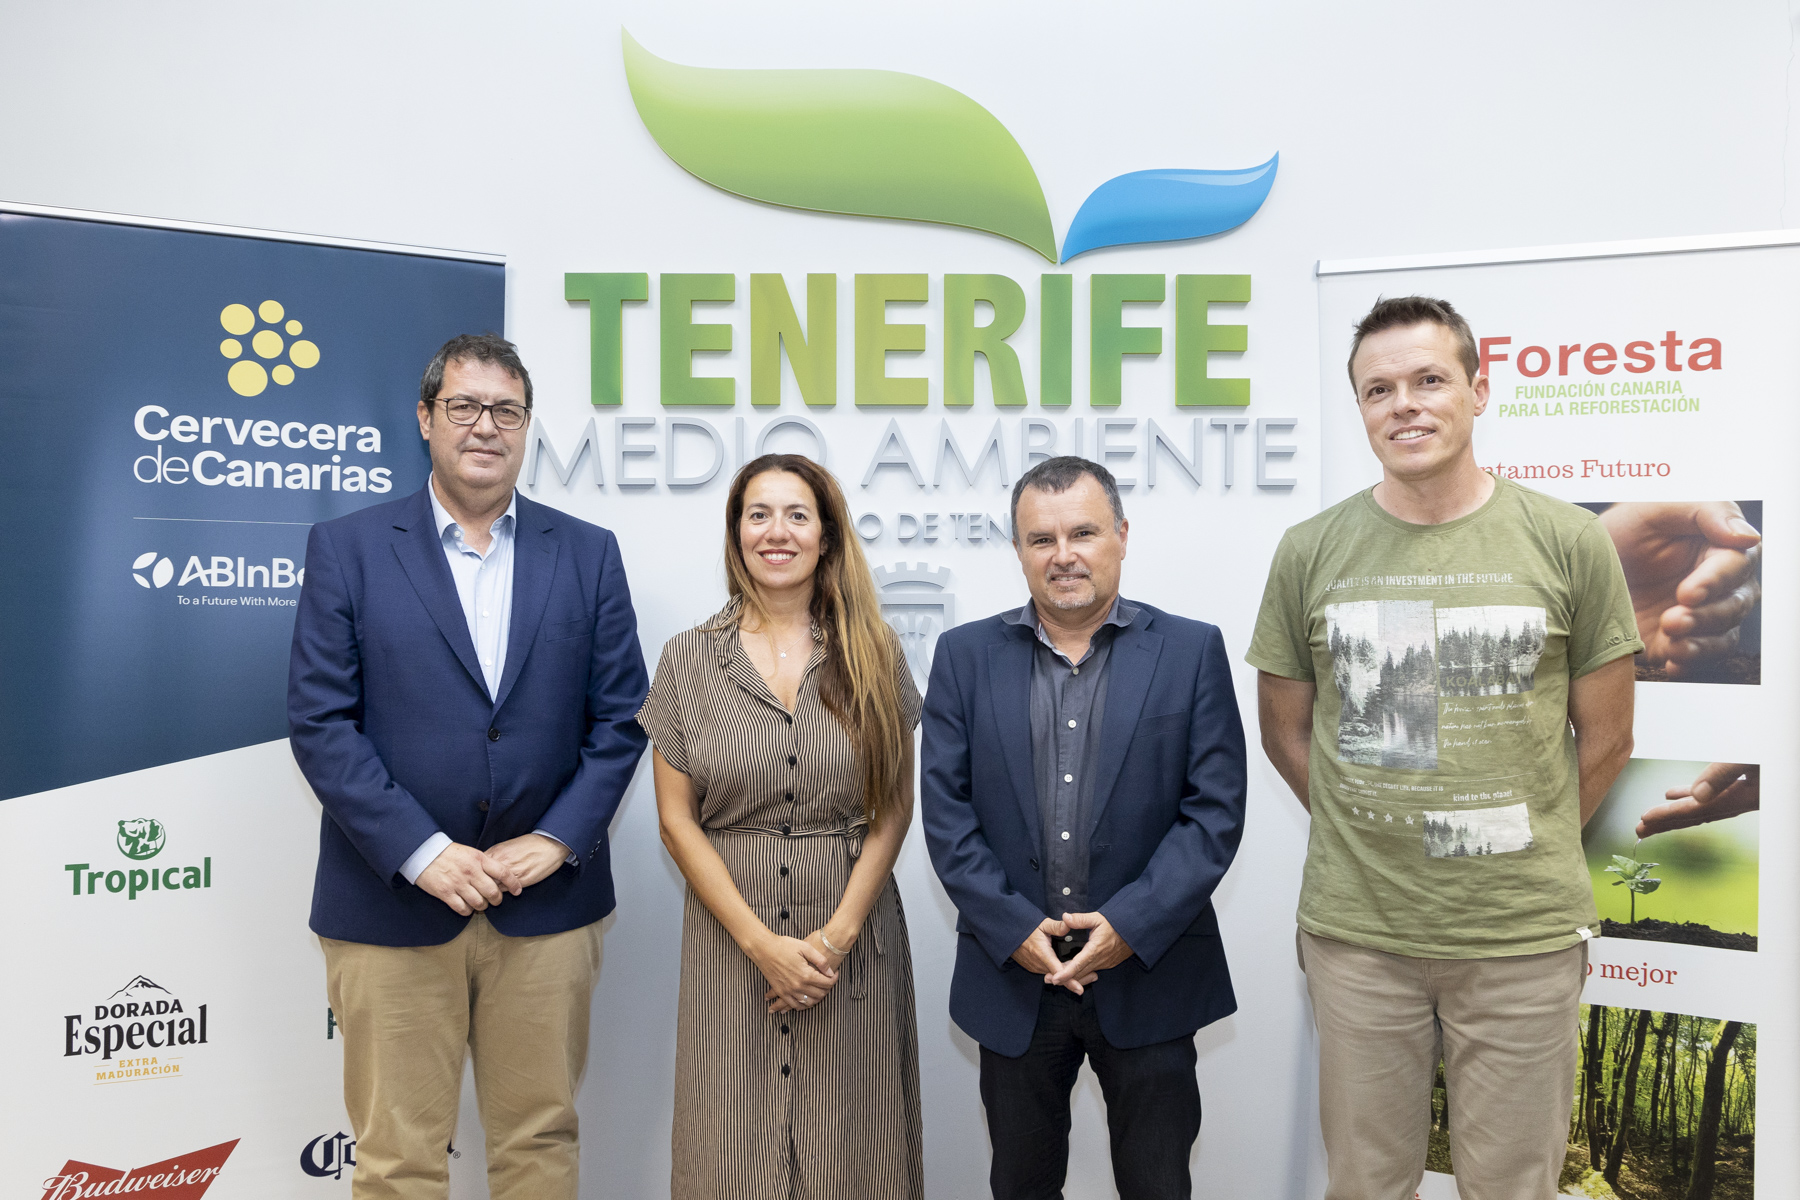 Cervecera de Canarias dona más de 26.000 euros para la recuperación de la zona afectada por el incendio de Tenerife